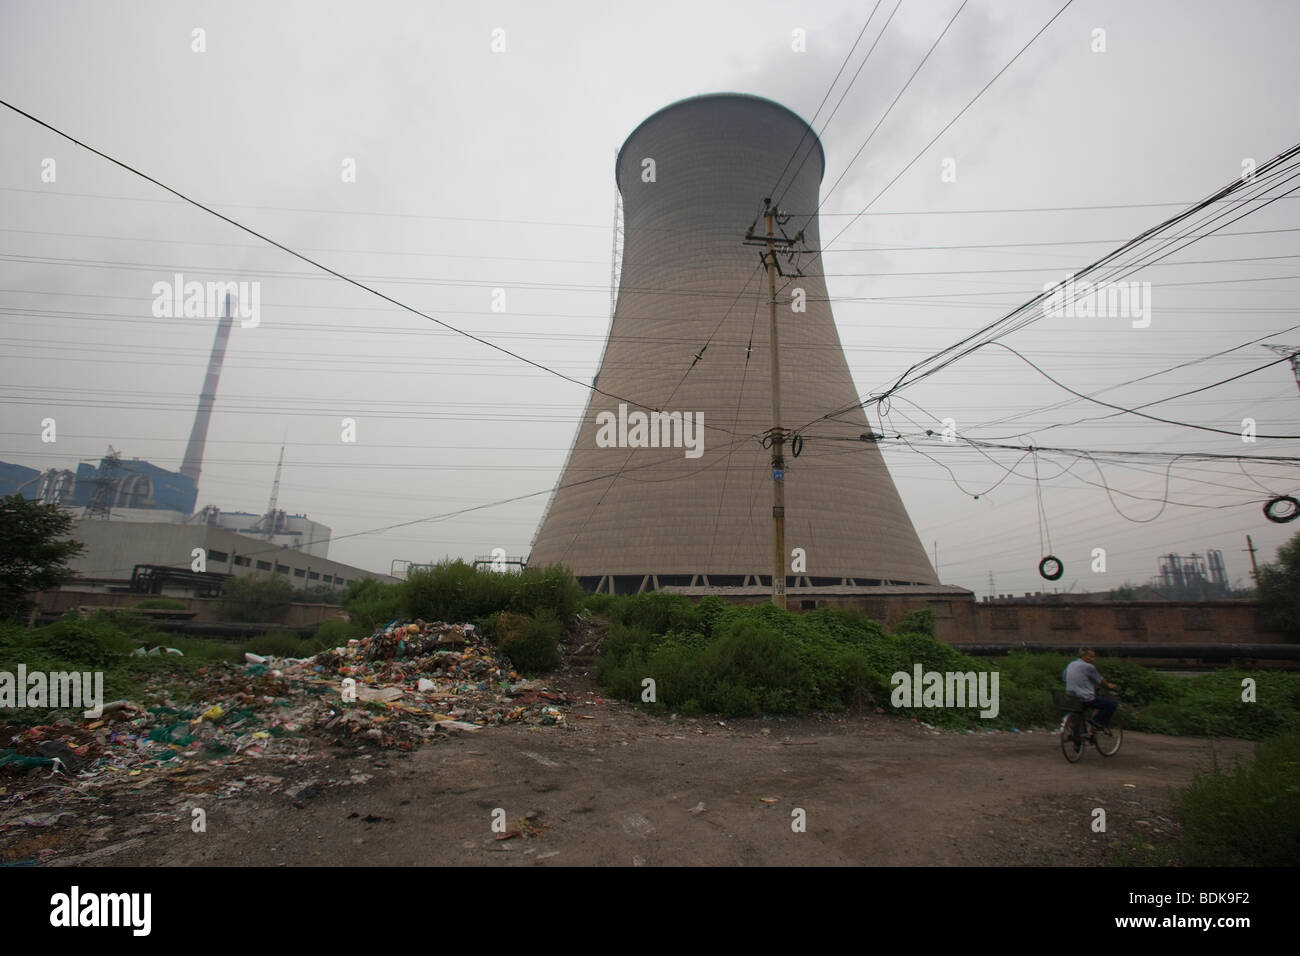 TAIYUAN, provincia de Shanxi, China, agosto de 2007: torre de enfriamiento de una central eléctrica en el centro de la ciudad. Foto de stock